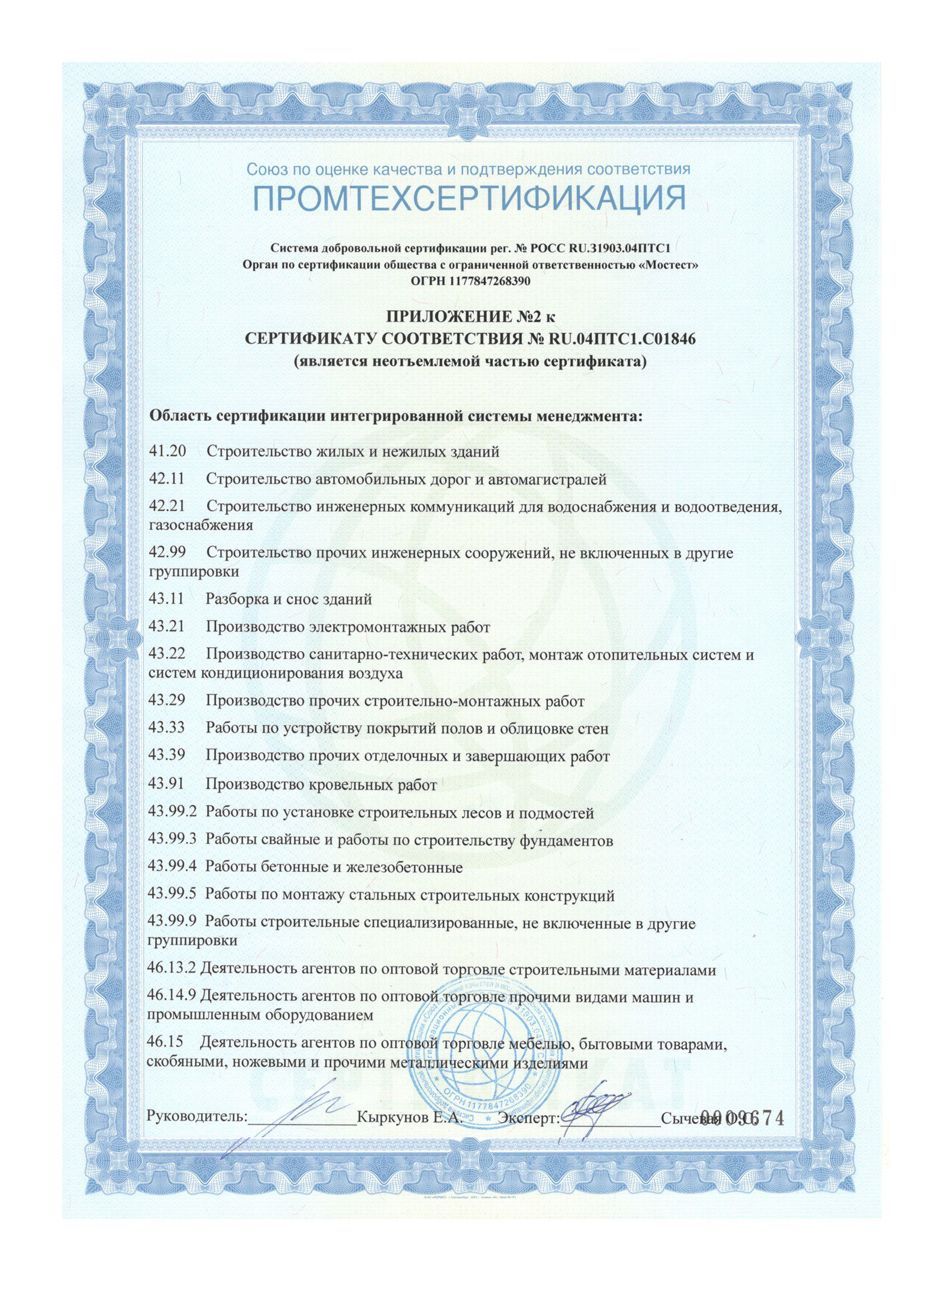 Сертификат соответствия № RU.04ПТС1.С01846 ISO 45001